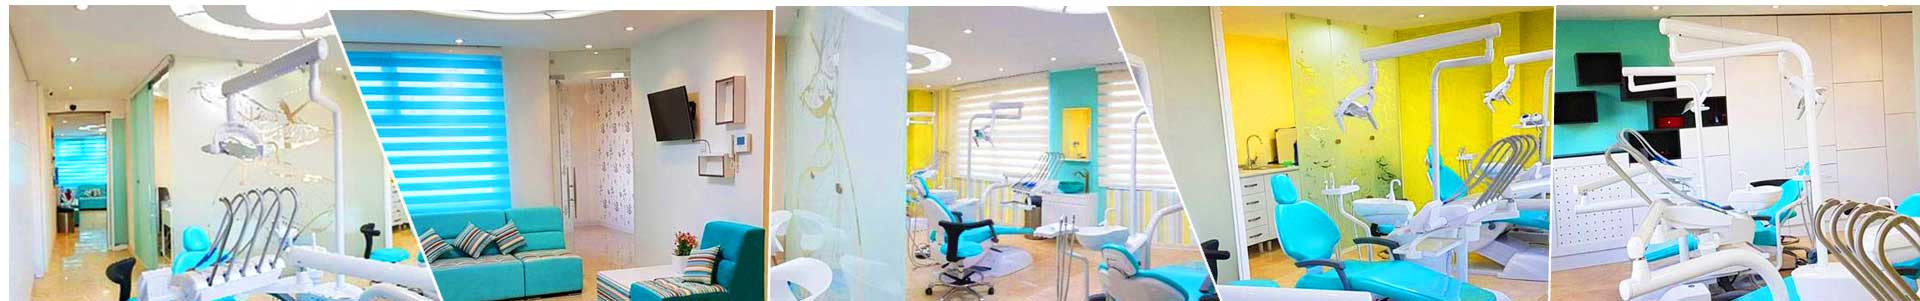 بهترین خرید مطب دندانپزشکی مایا (دکتر نوری) تهران با بیشترین درصد تخفیف در قیمت - 28%